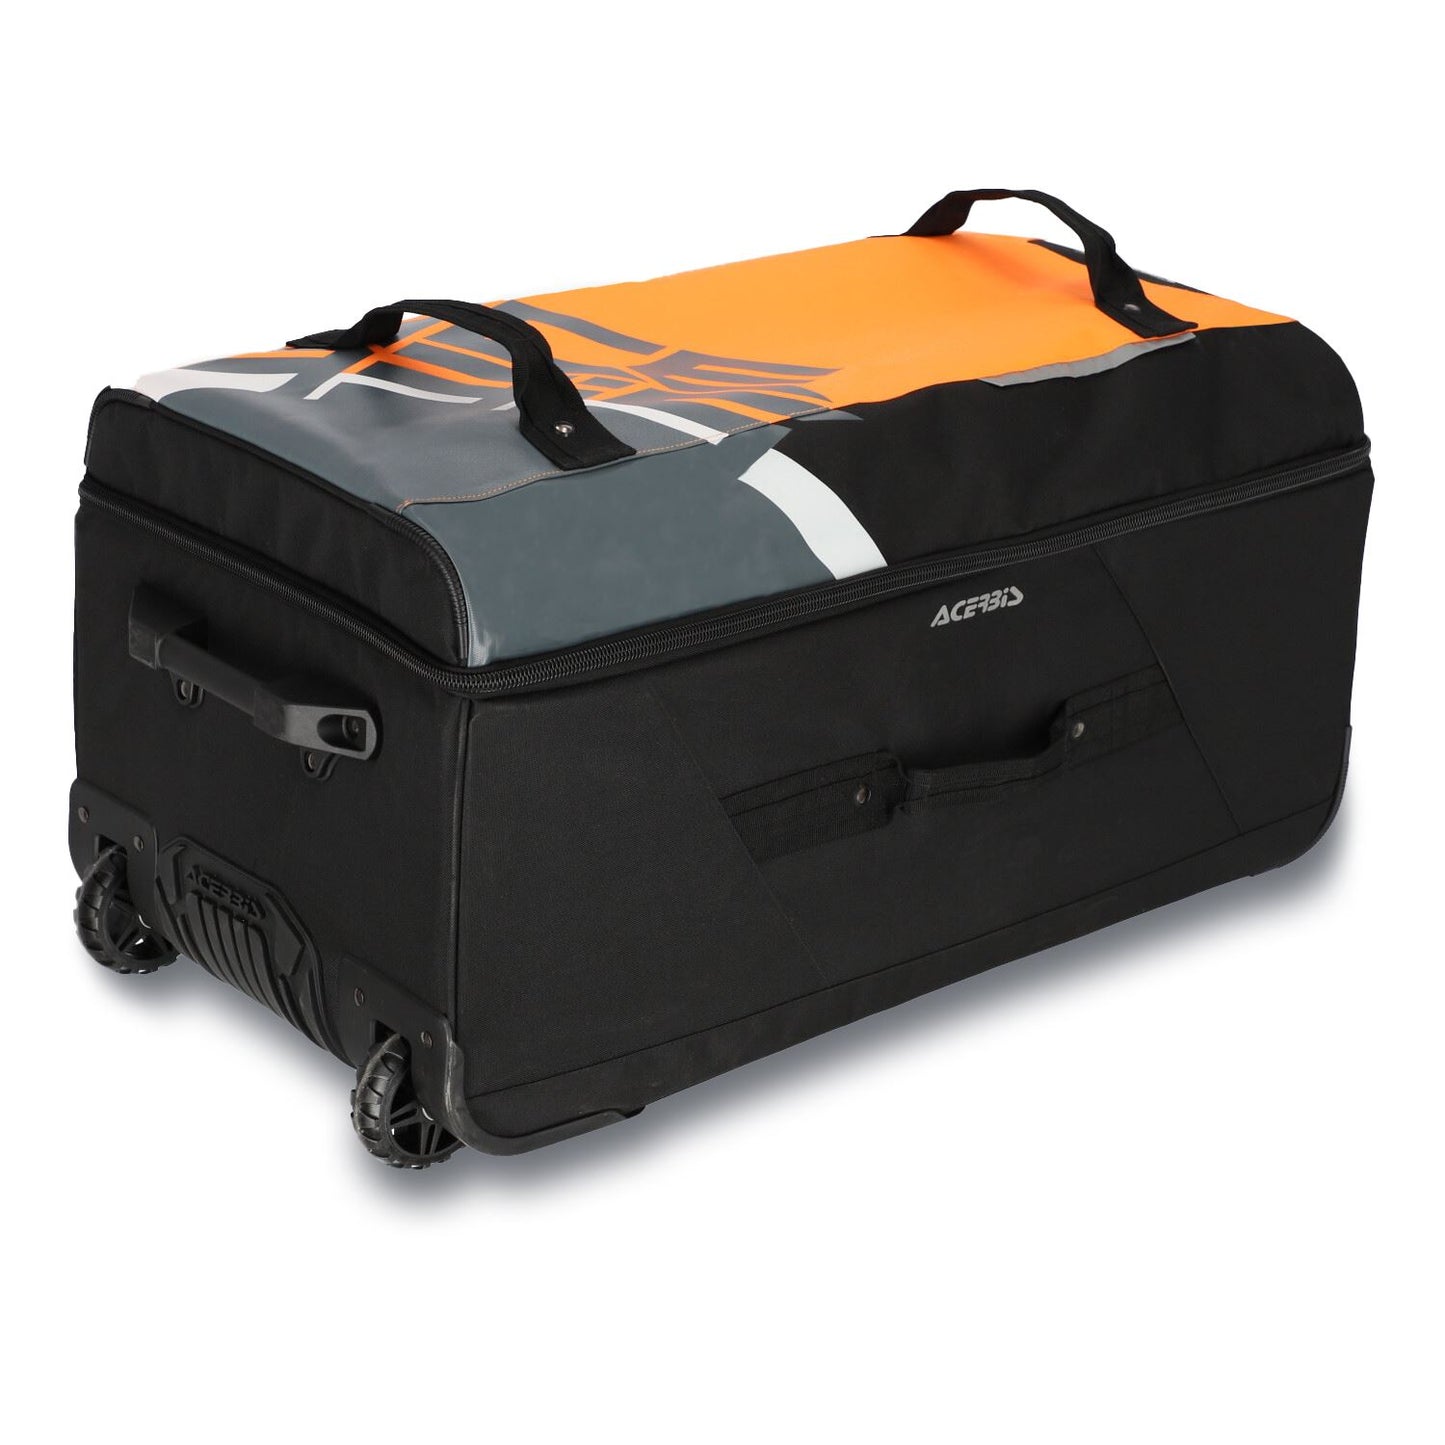 Acerbis Voyager Bag Orange Grey 105 Litre